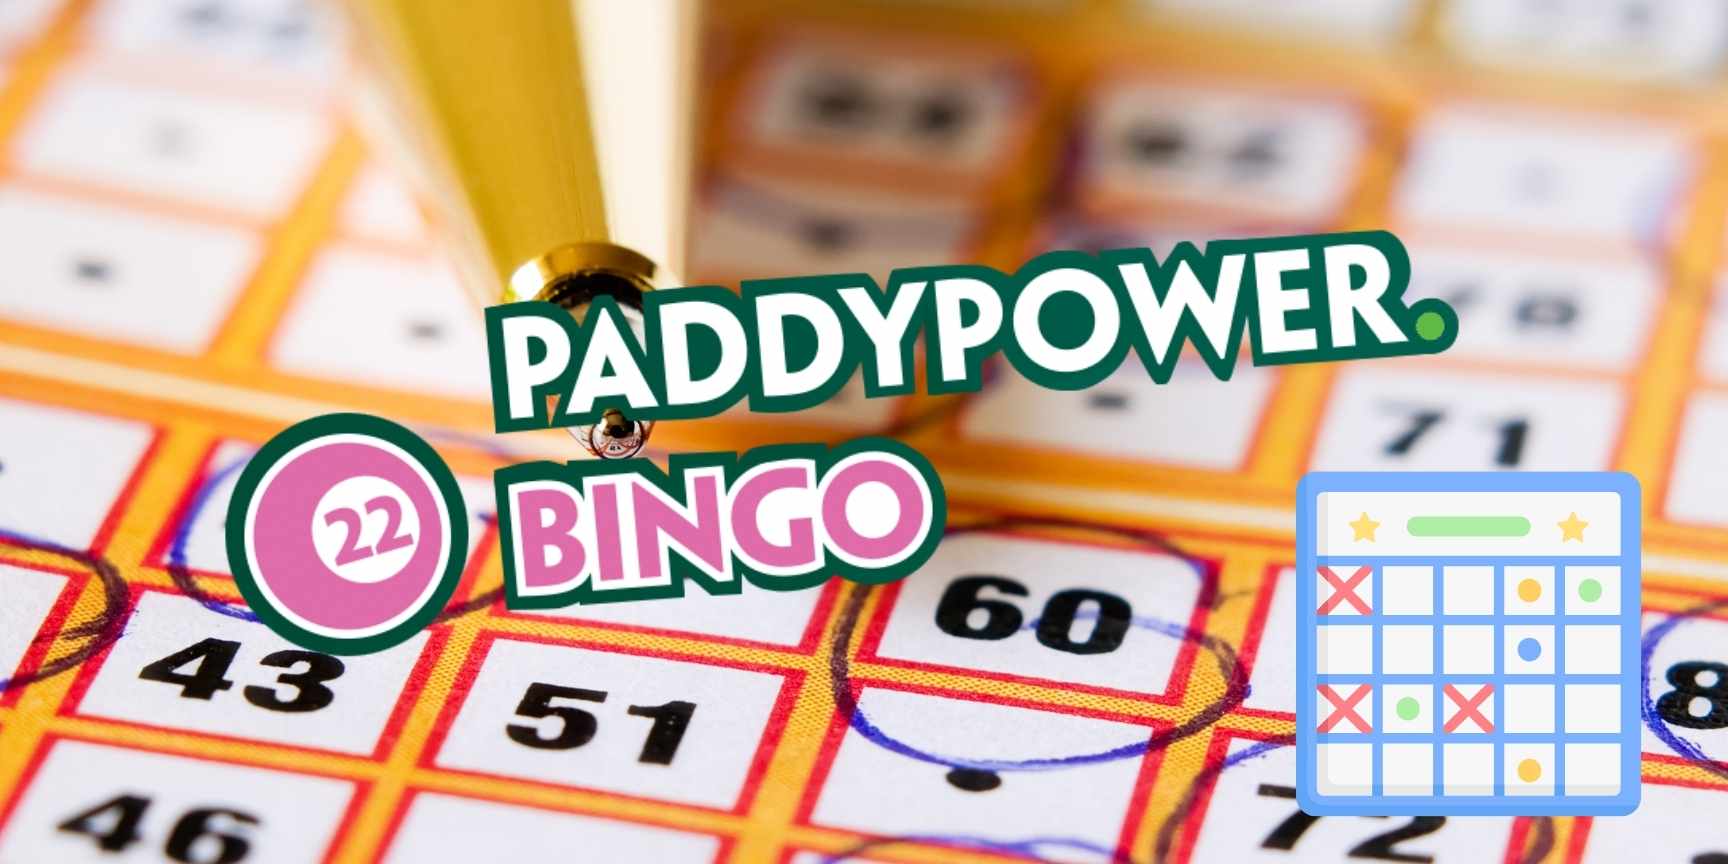 paddypower bingo